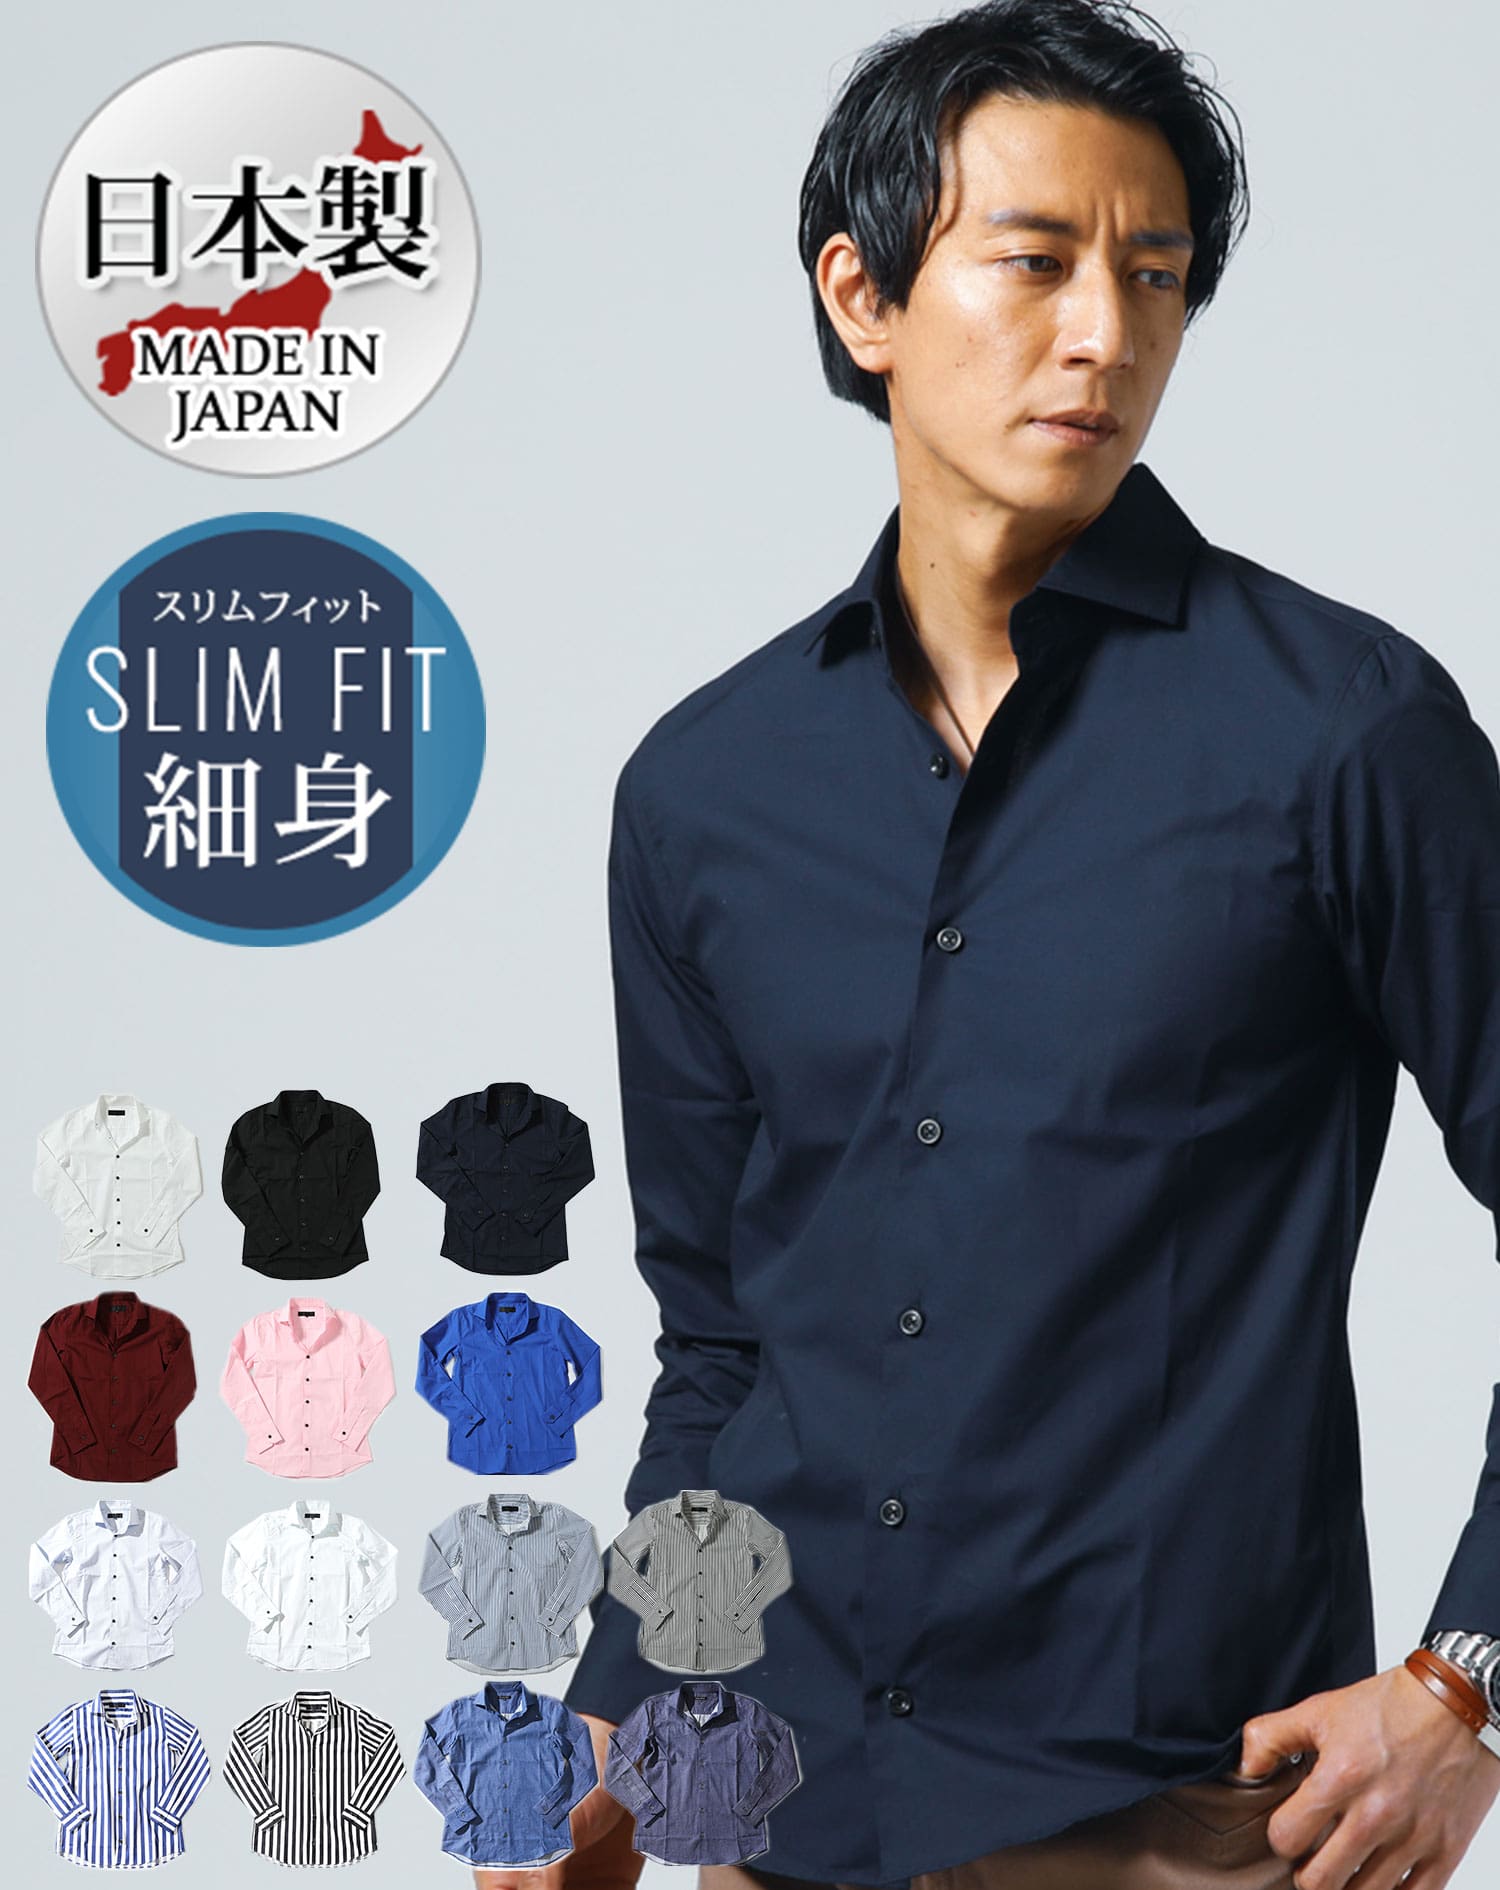 日本製ホリゾンタルカラー無地長袖スリムフィットシャツ